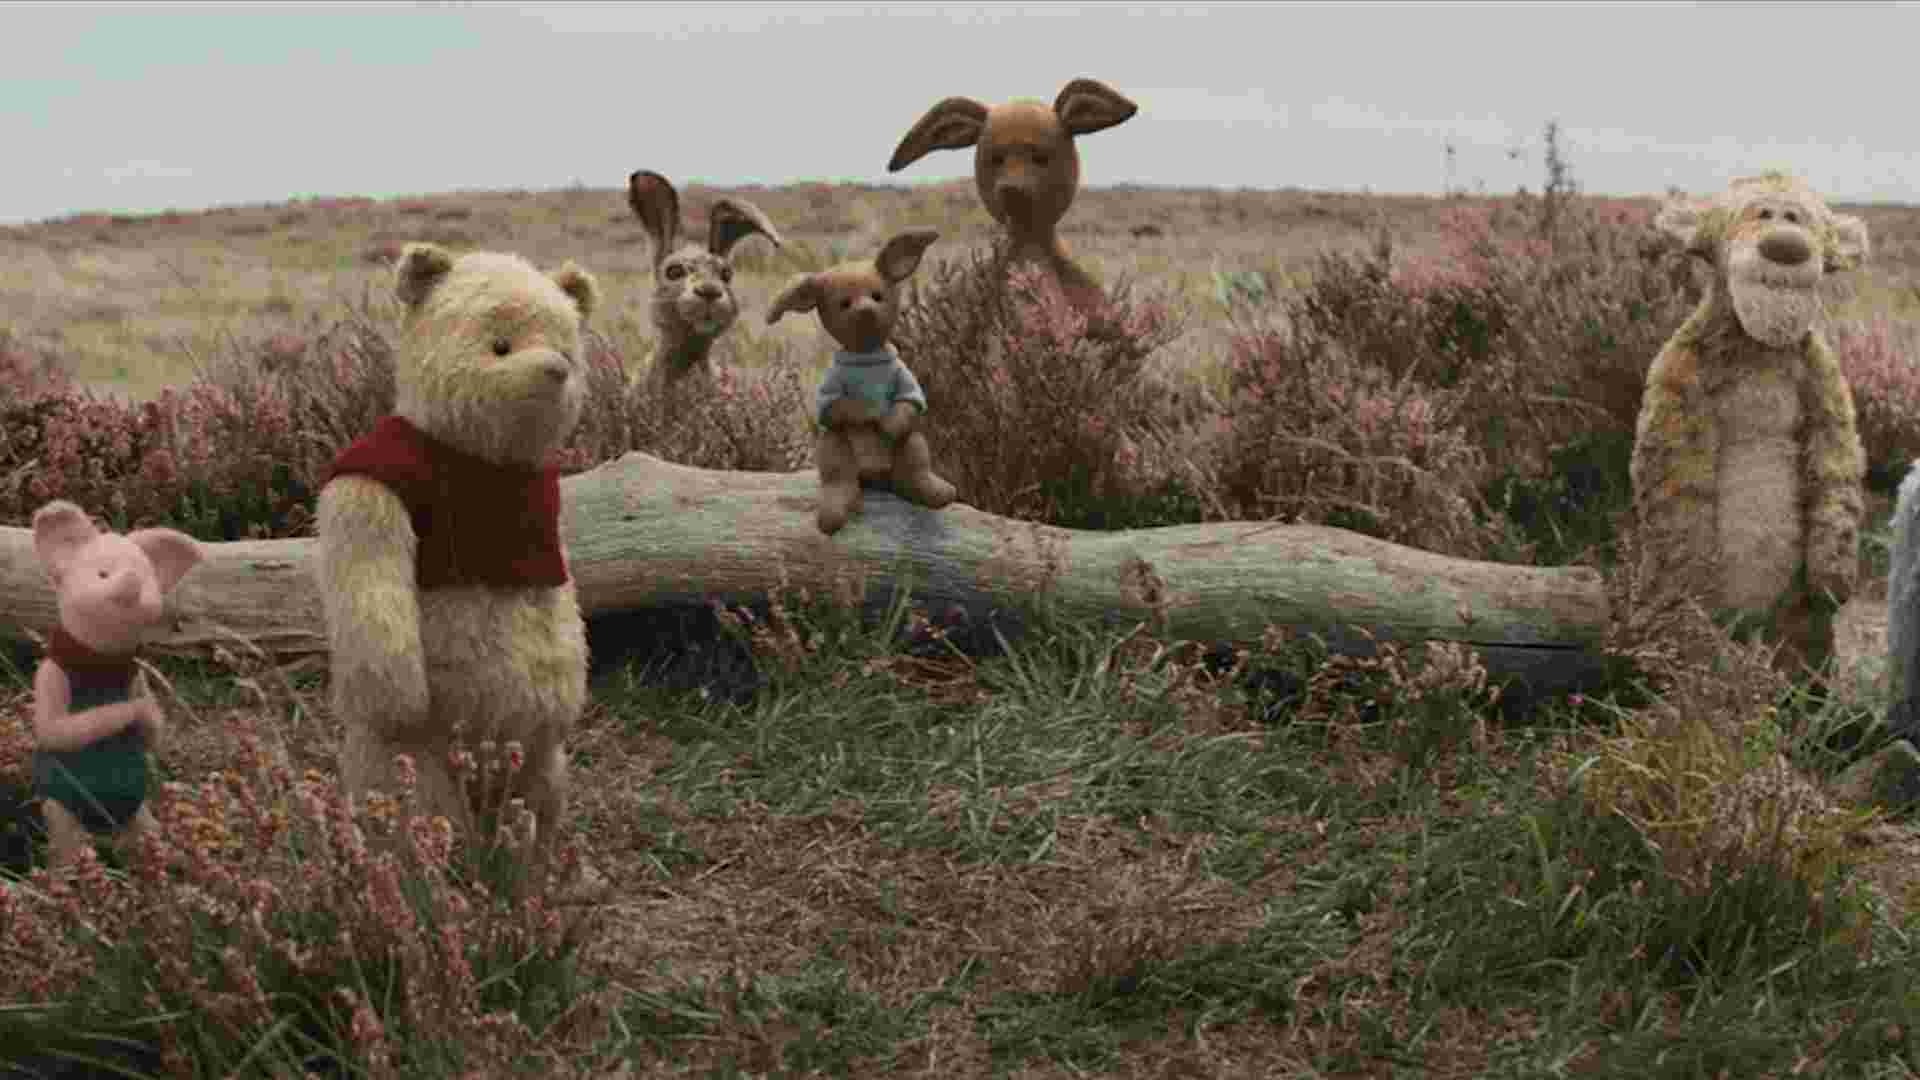 Sisi Gelap Winnie The Pooh, Deretan Karakter dengan Gangguan Mental Layaknya Manusia